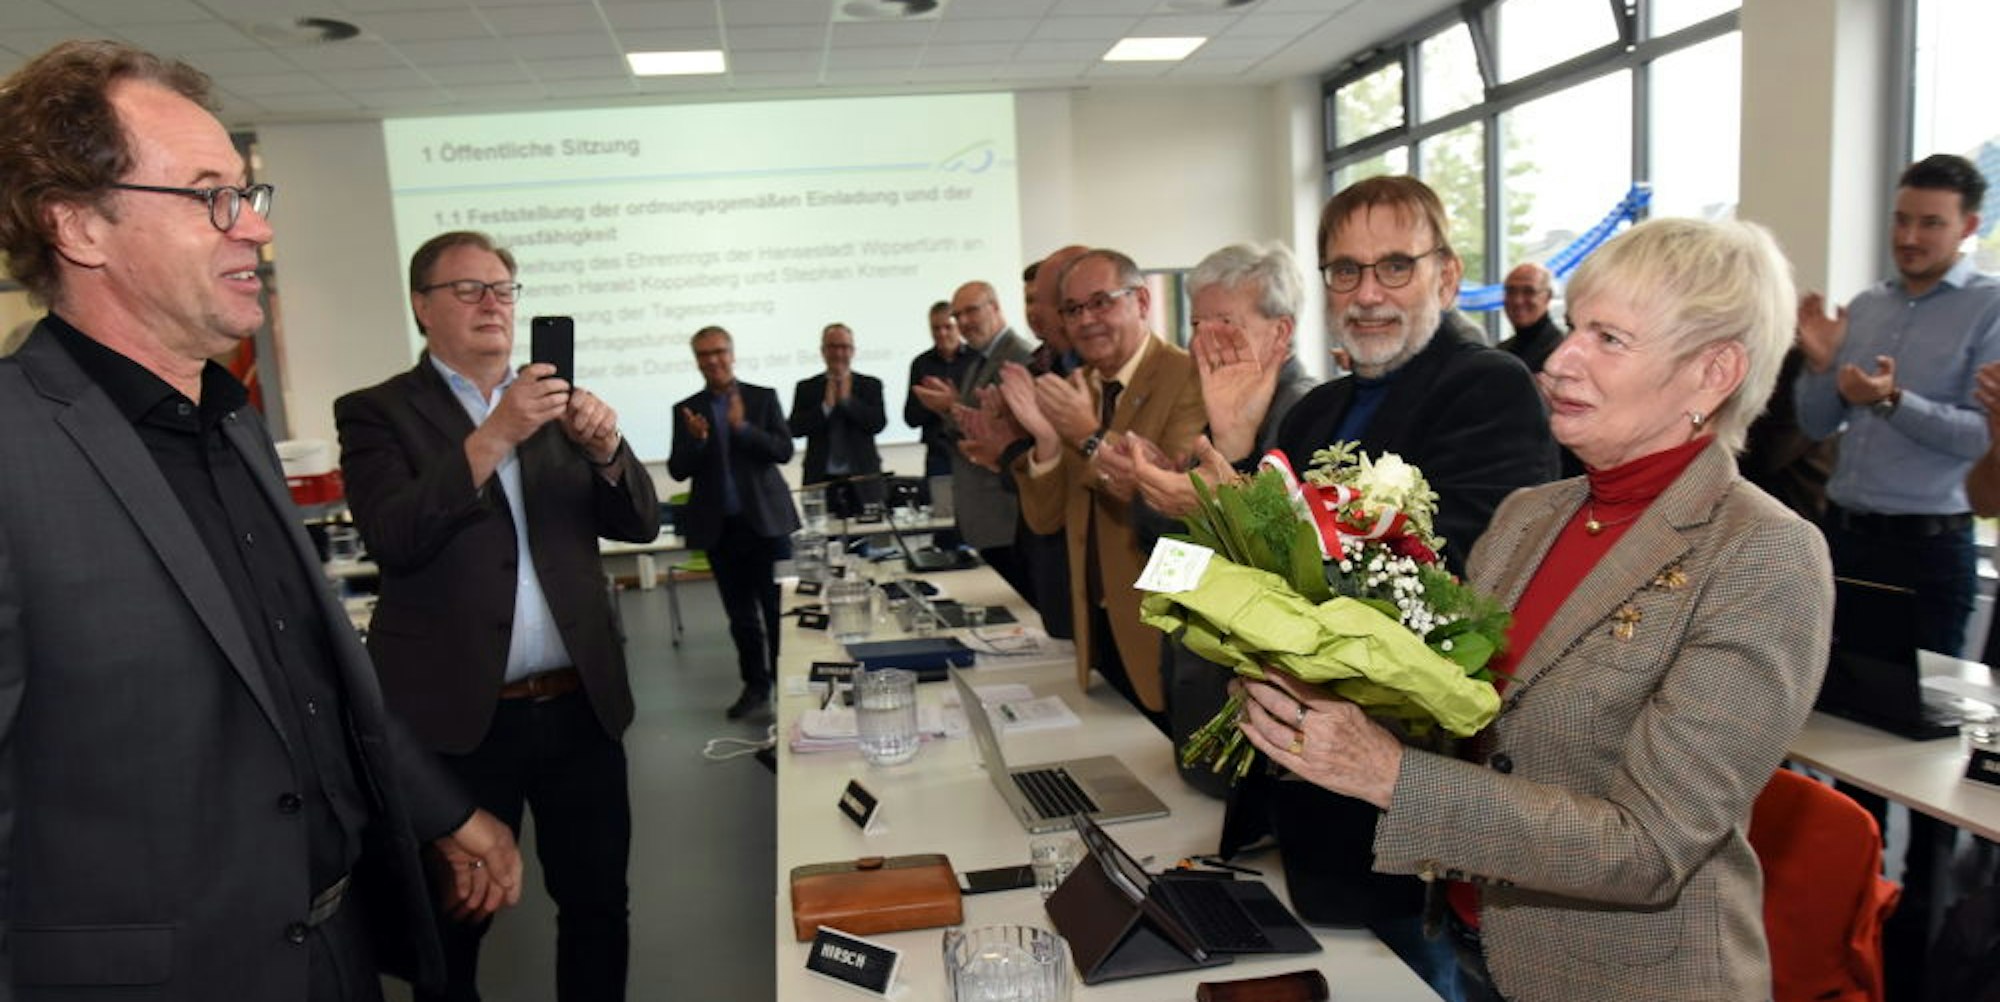 Margit Ahus (CDU) (r.) bekam für 30 Jahre im Rat einen Blumenstrauß.